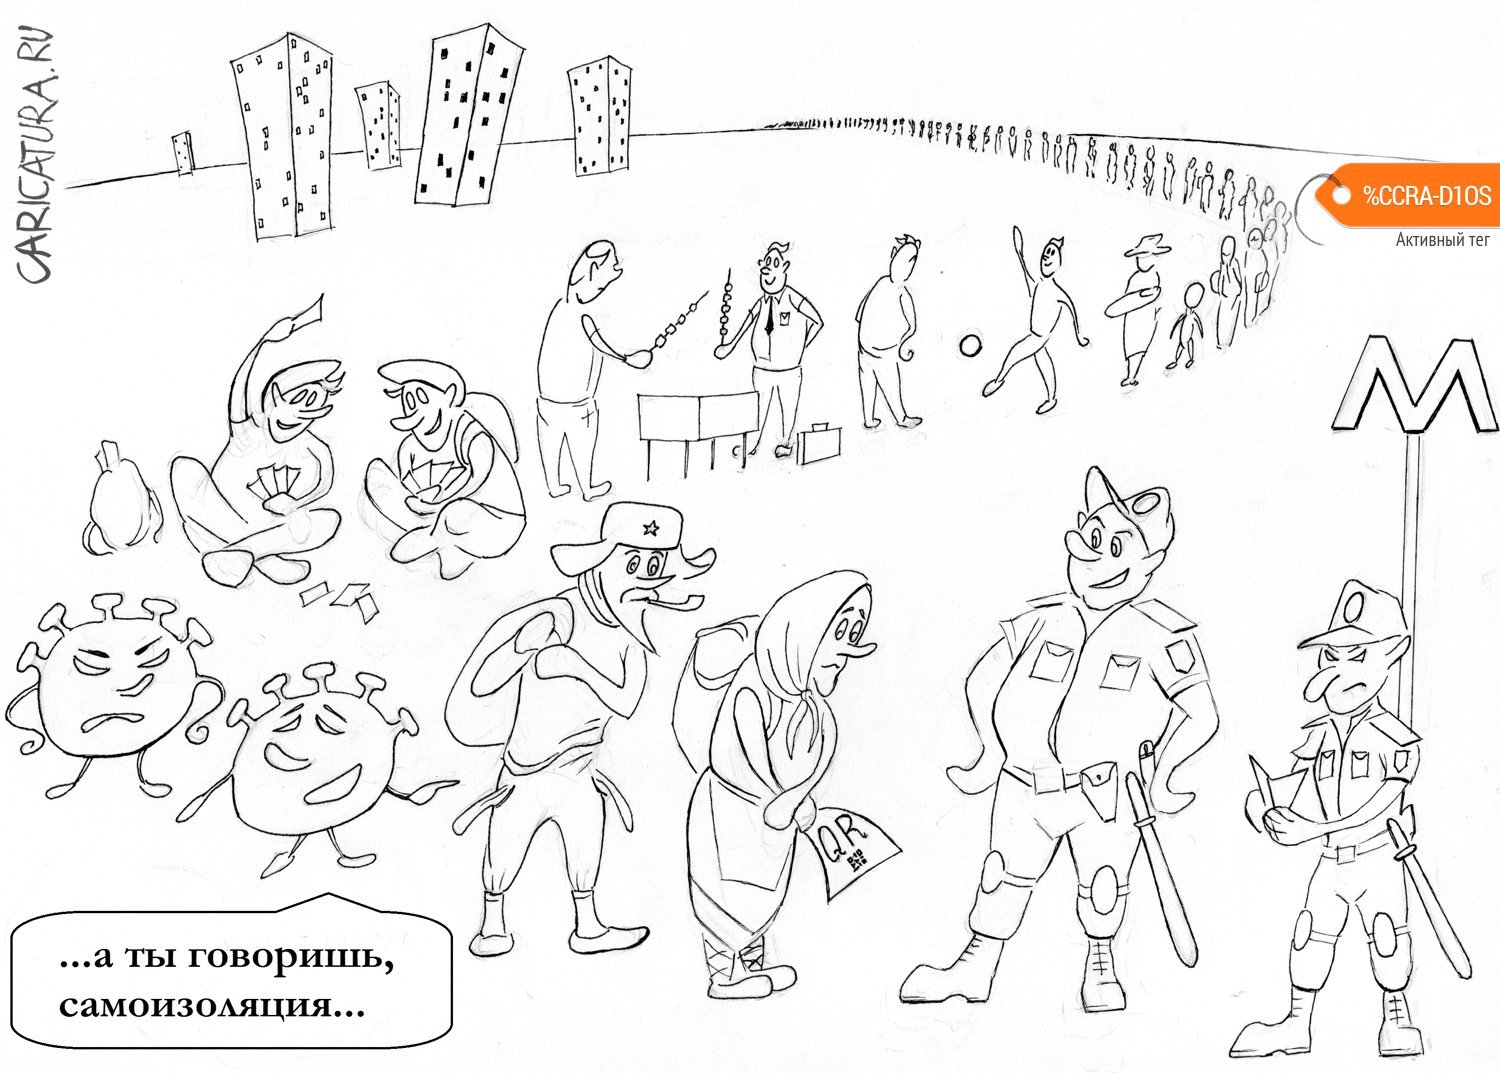 Карикатура "Москва, метро, коронавирус...", Глеб Белевский